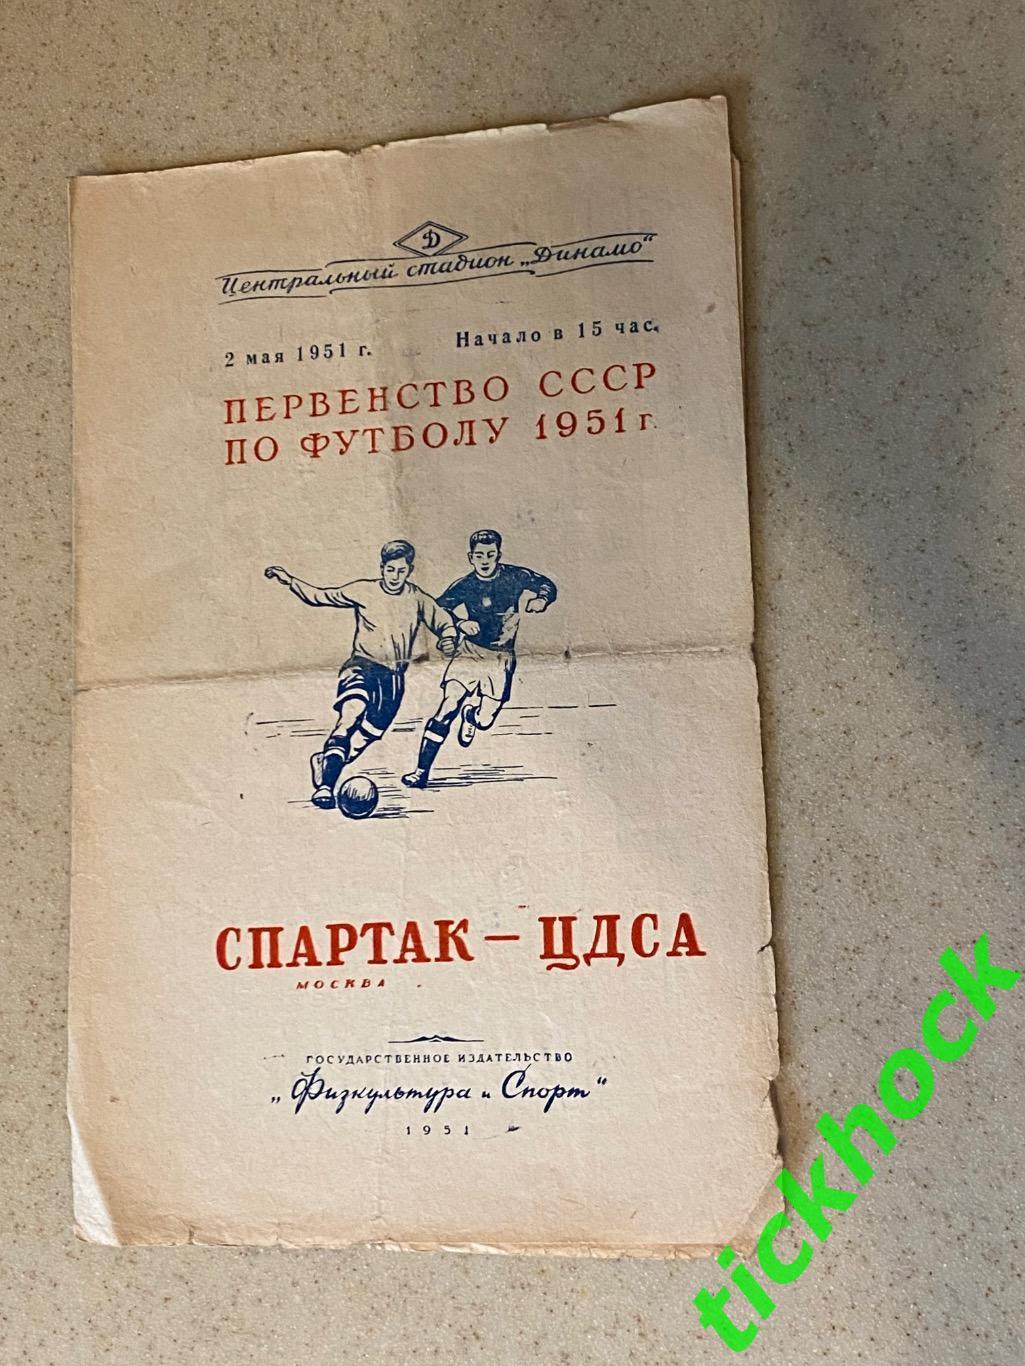 Первенство СССР Спартак Москва - ЦДСА / ЦСКА Москва 02.05.1951